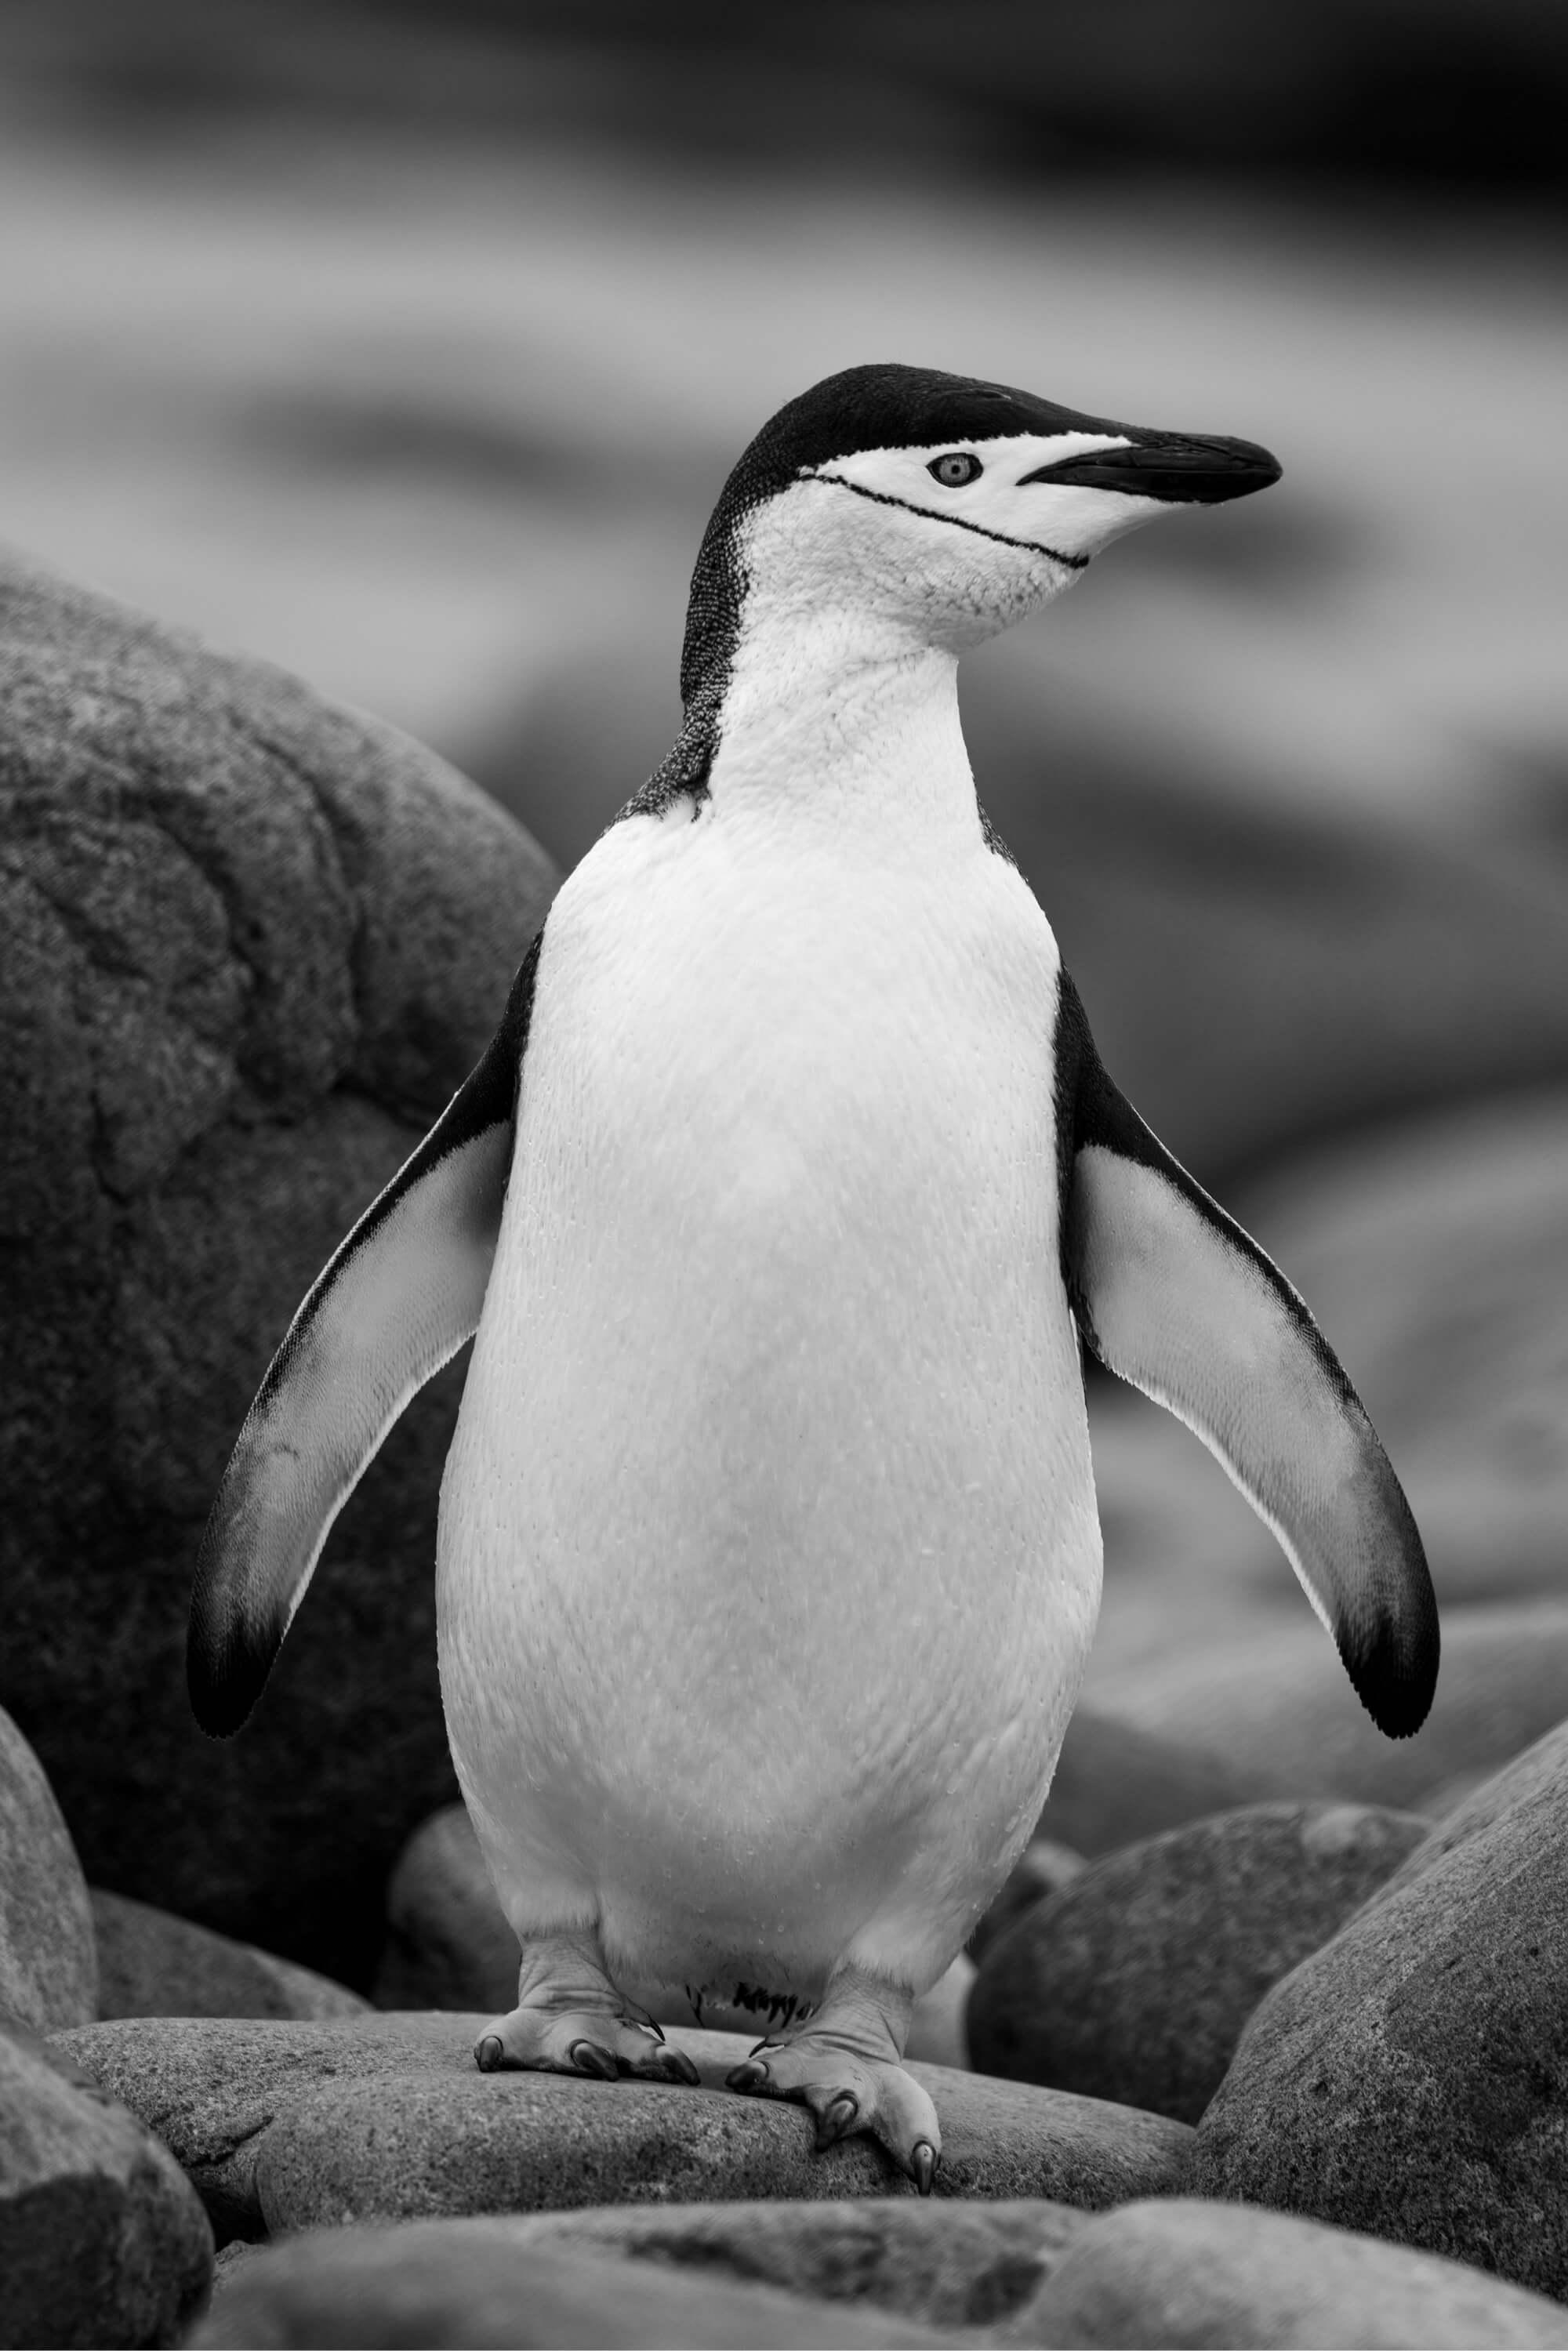 البطريق الملجم بمظهره المميز.  المصور: أرتيم شيستاكوف. المكان: القطب الجنوبي.